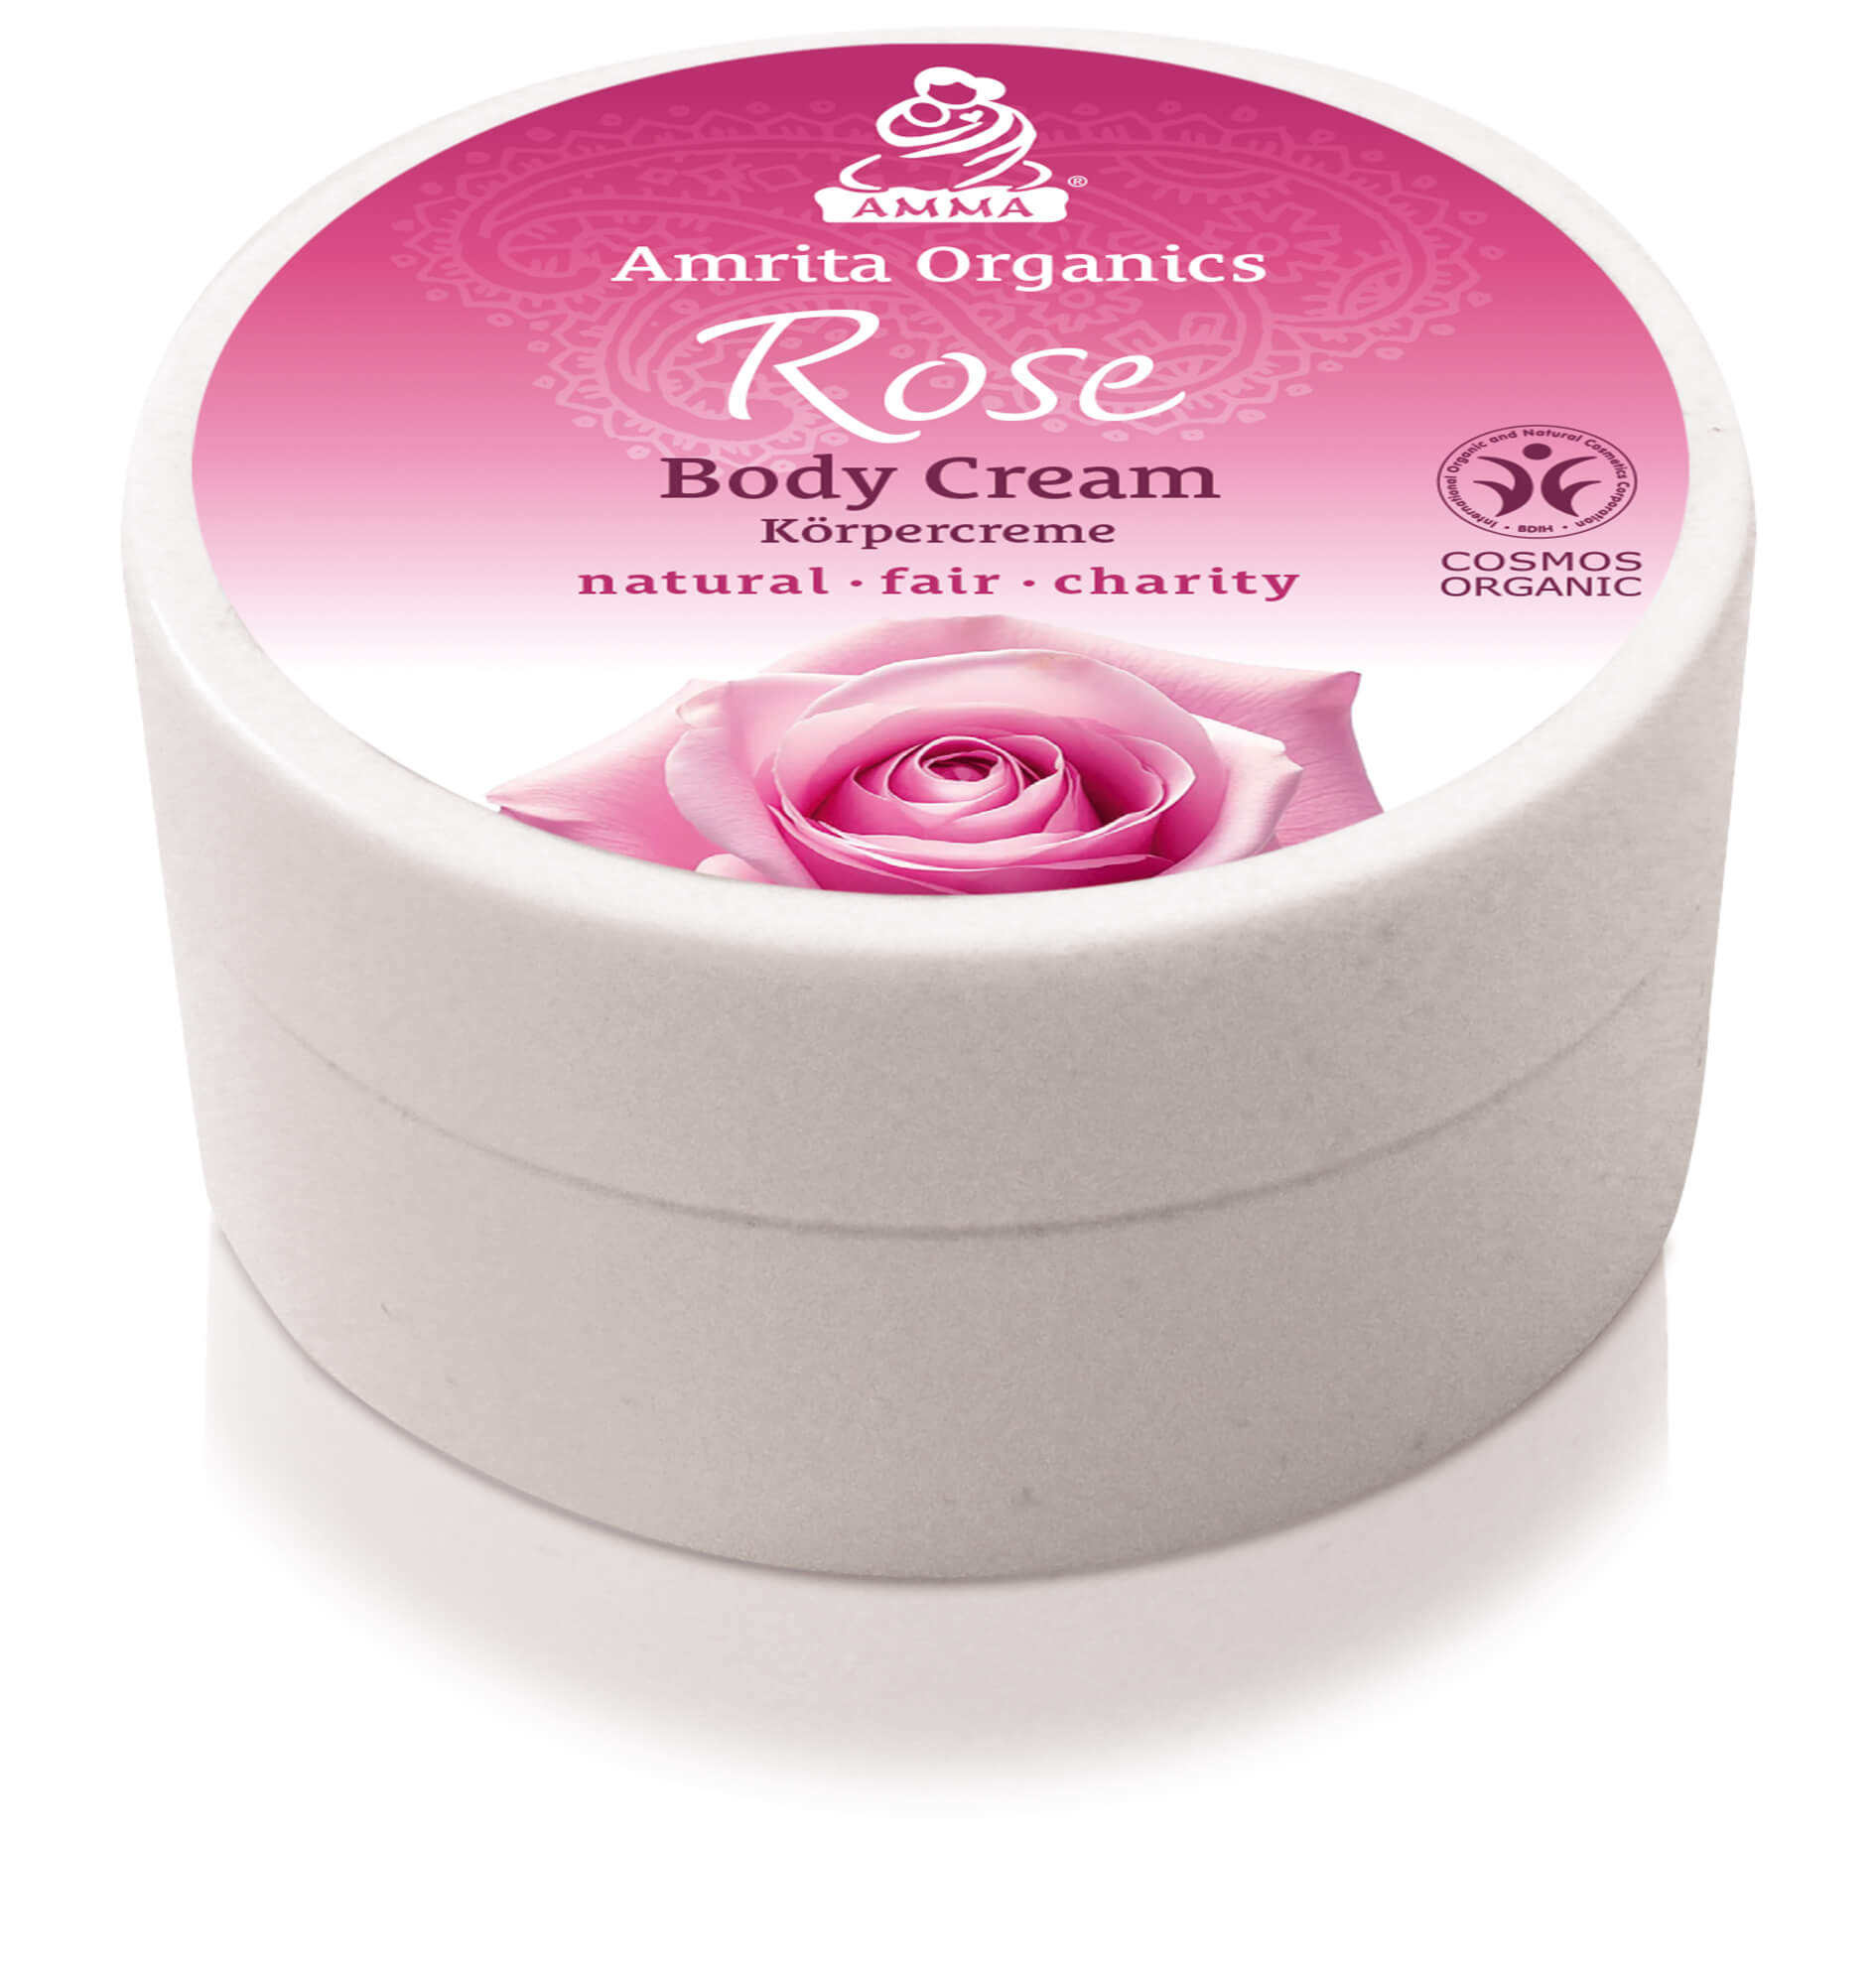 Body Cream Rose